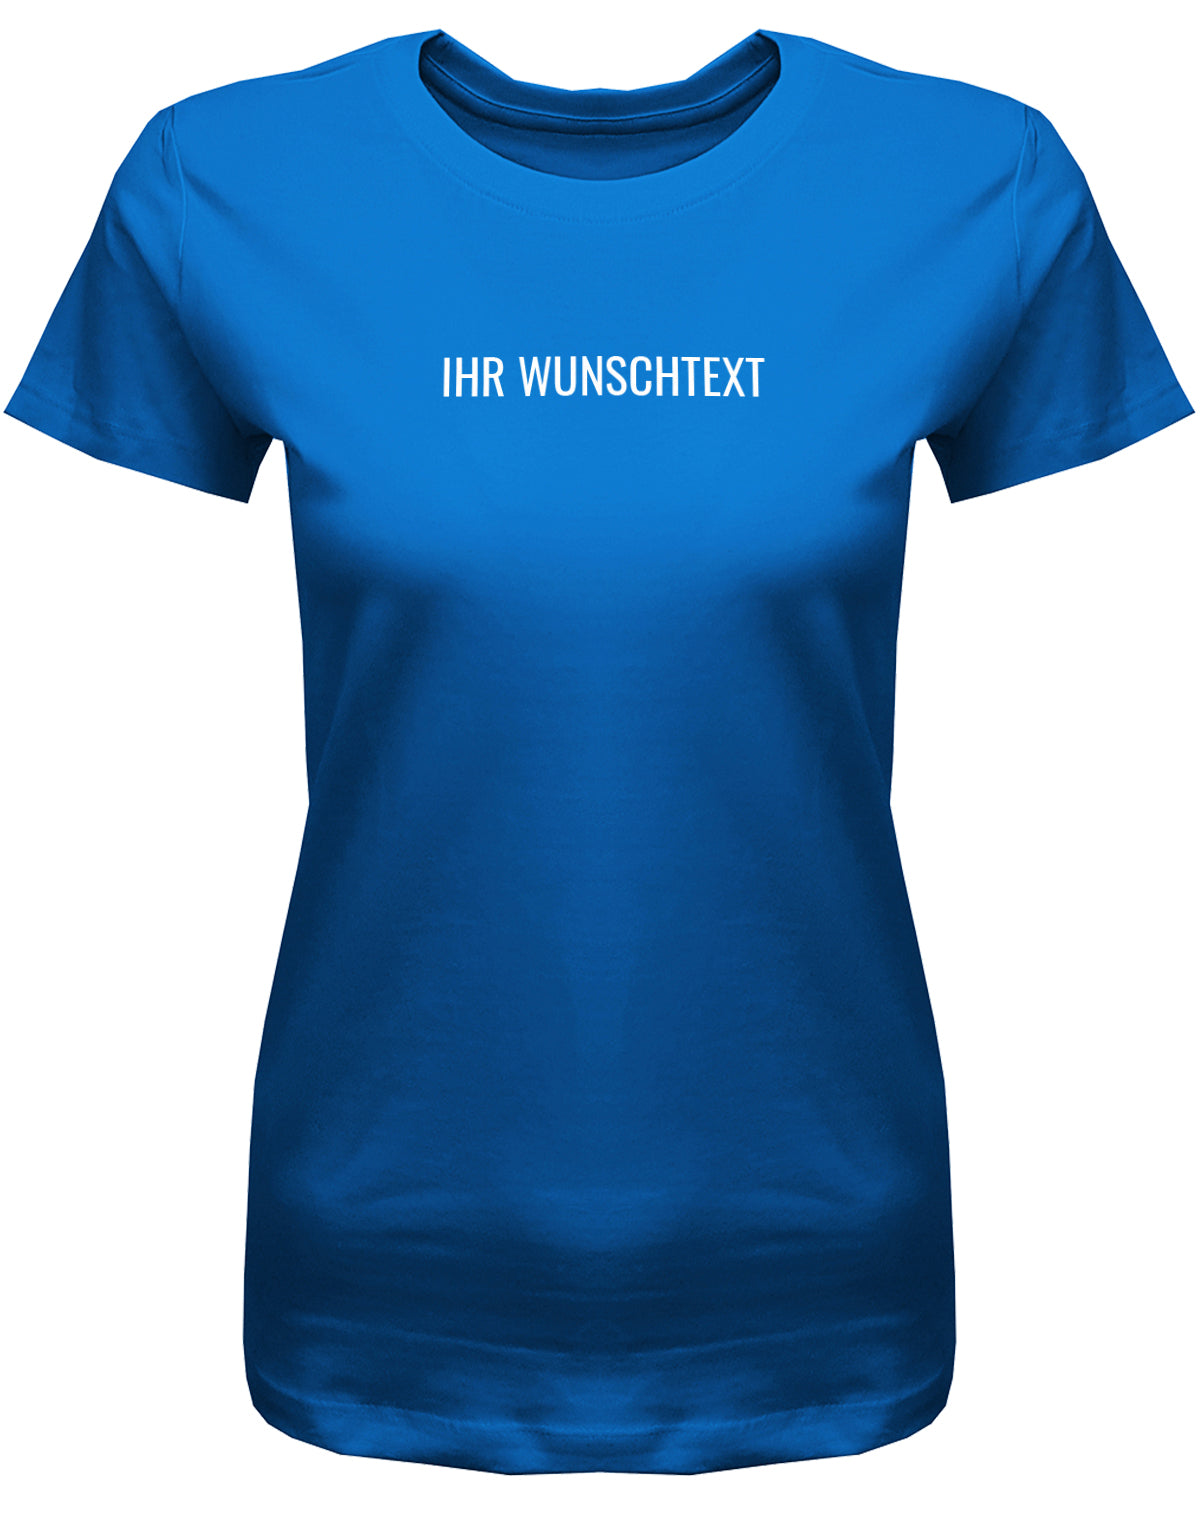 Frauen Tshirt mit Wunschtext. Minimalistisches Design. Royalblau